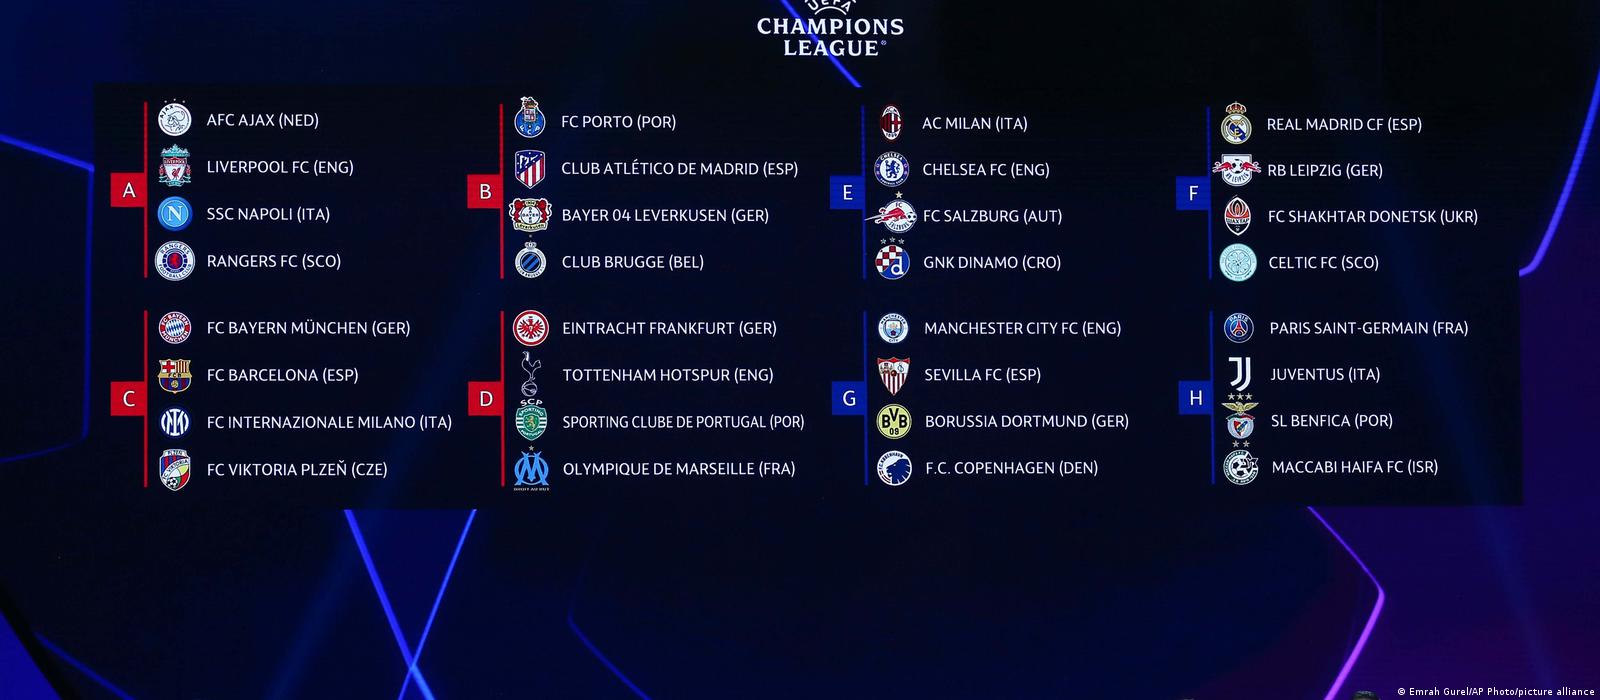 Confira os detalhes da mudança dos horários de jogos da Champions League